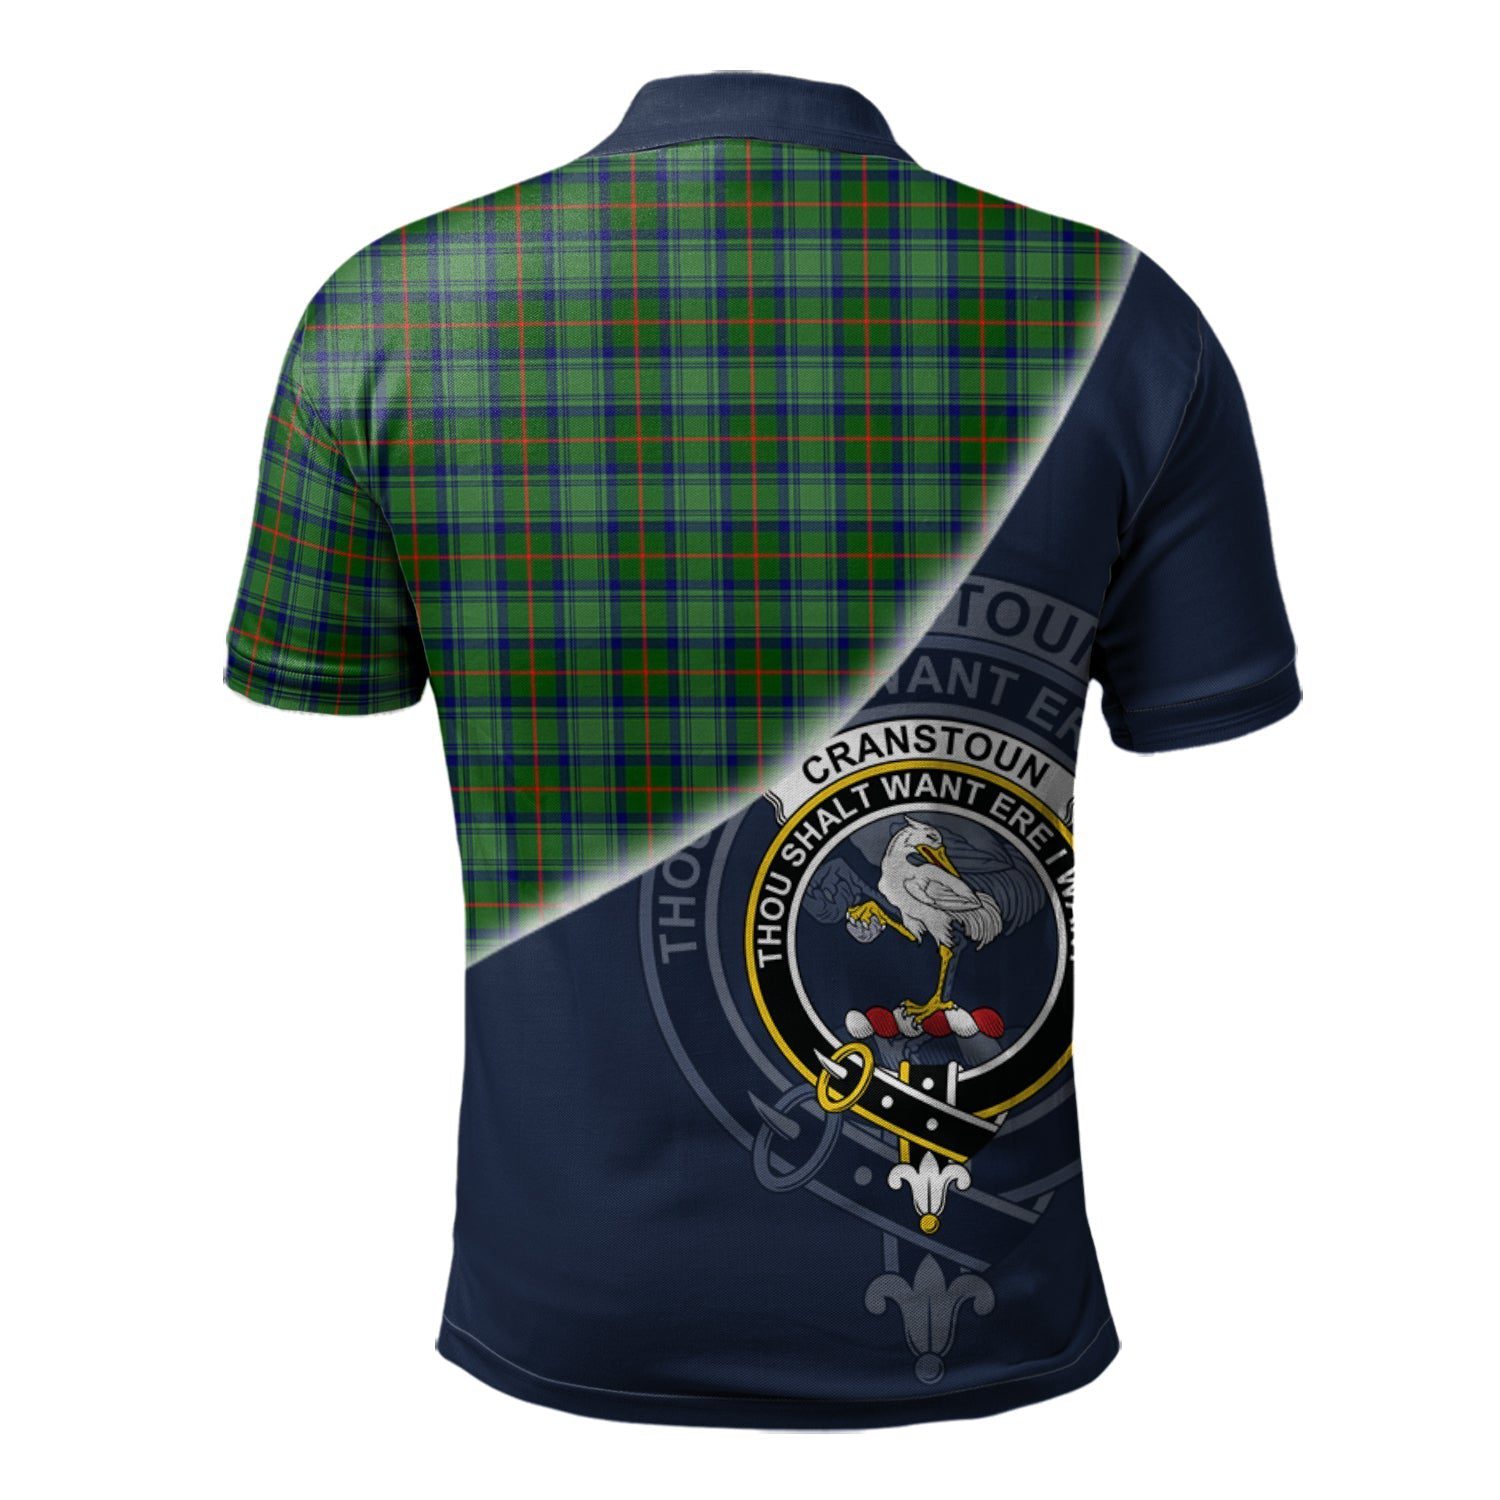 Cranstoun Clan Scotland Golf Polo, Tartan Mens Polo Shirts with Scottish Flag Half Style K23